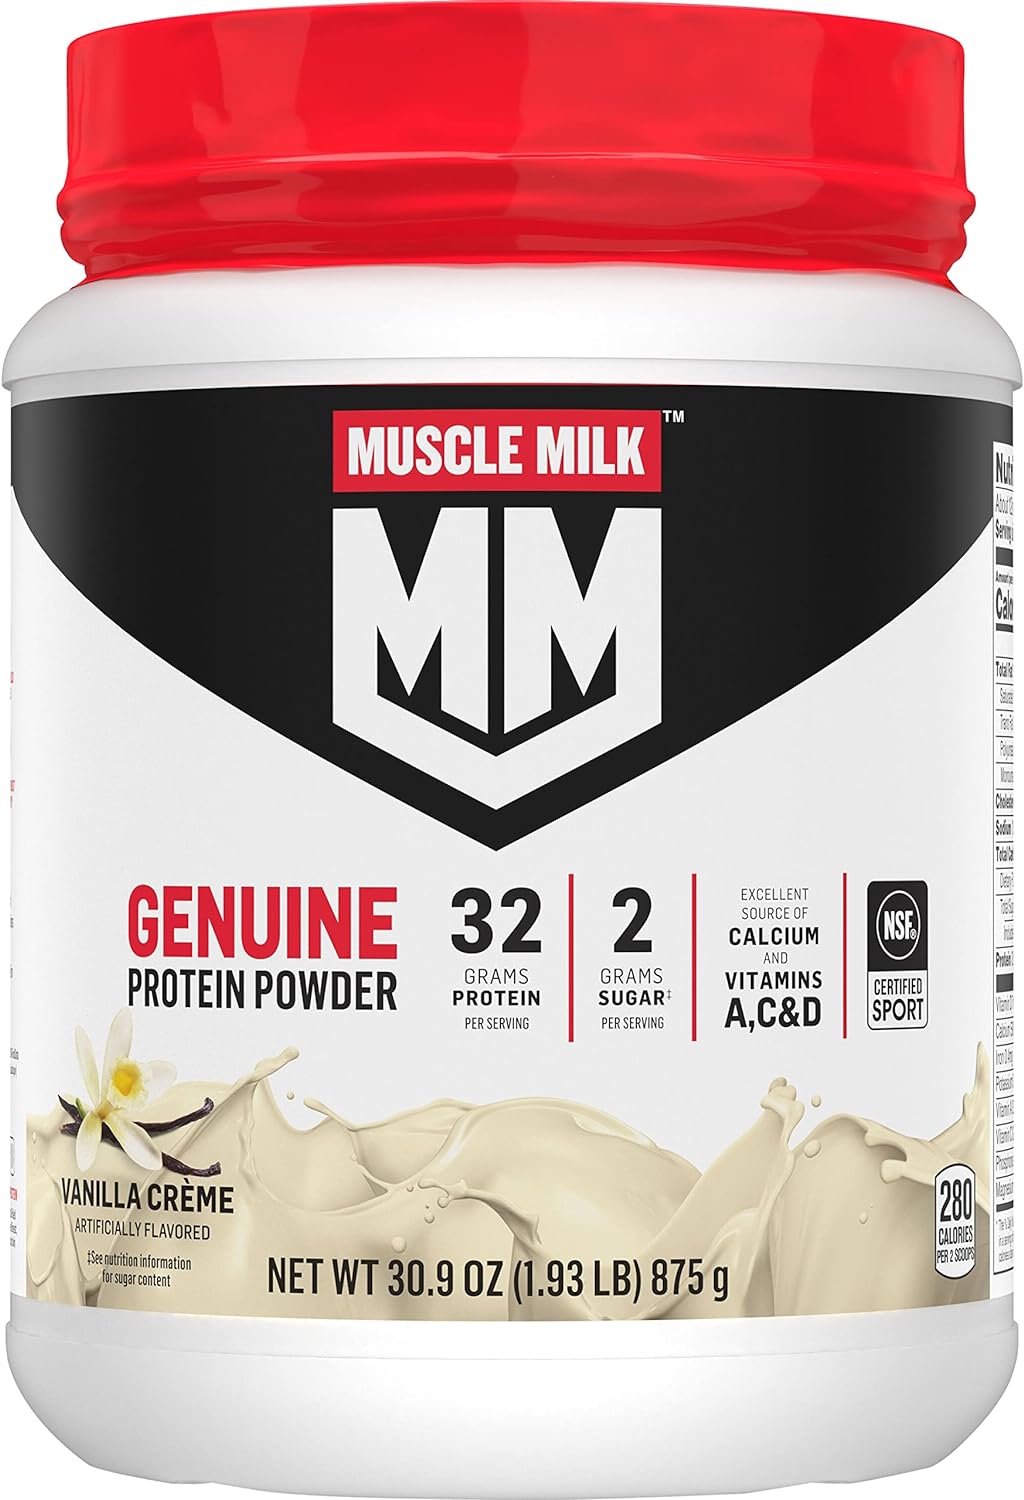 Muscle Milk Genuine Protein Powder, Vanilla Crme, 1.93 Pounds, 12 Ser